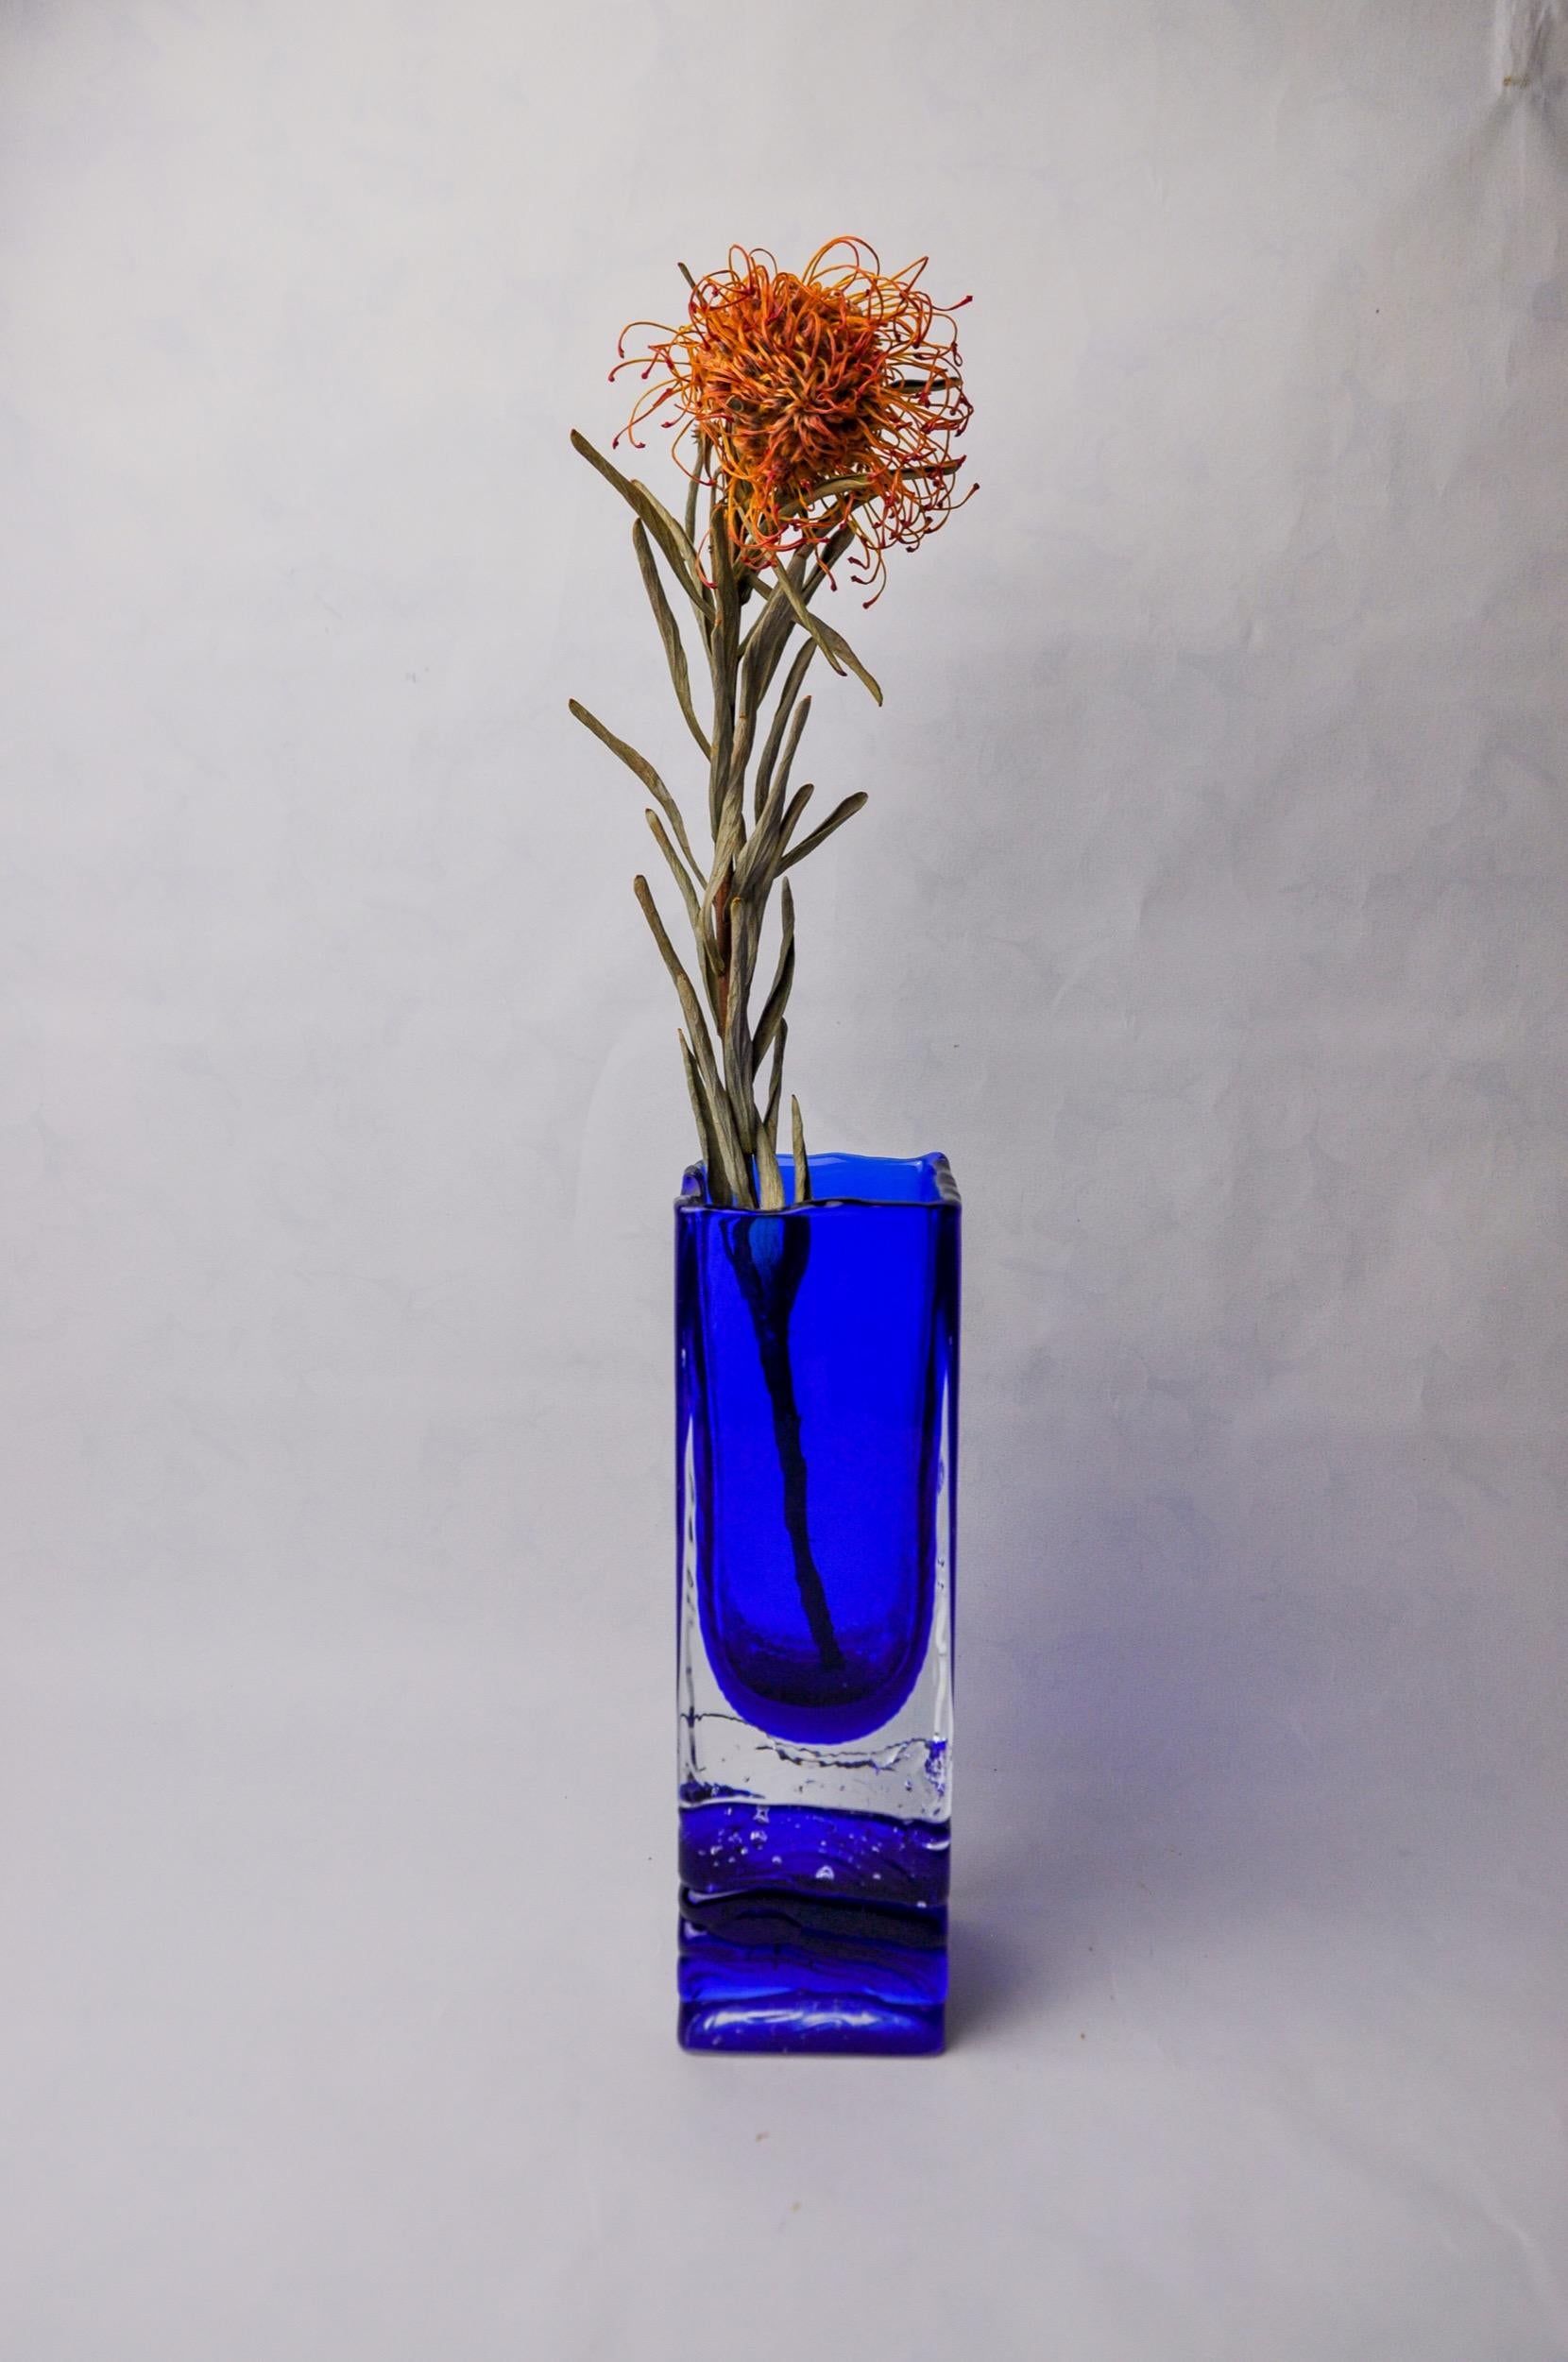 Hervorragende Sommerso-Vase, entworfen und hergestellt von Petr Hora in der Tschechischen Republik in den 1970er Jahren. Viereckige Vase aus blauem Glas, die der tschechische Künstler in Handarbeit mit der 